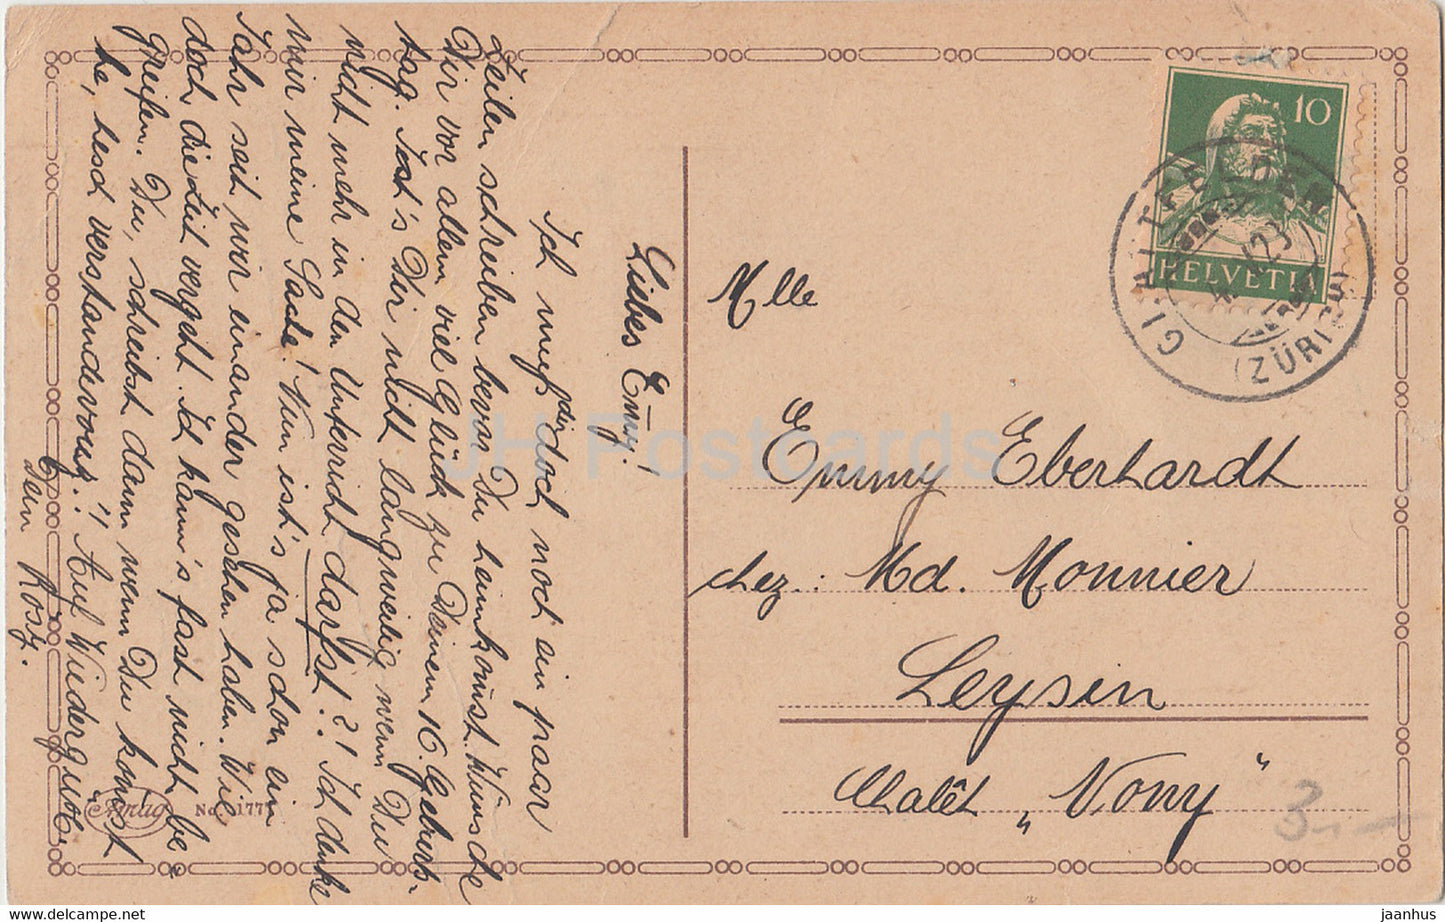 Carte de vœux d'anniversaire - Herzlichen Gluckwunsch zum Geburtstage - fille - Amag 1777 - carte postale ancienne - 1923 Allemagne - utilisée